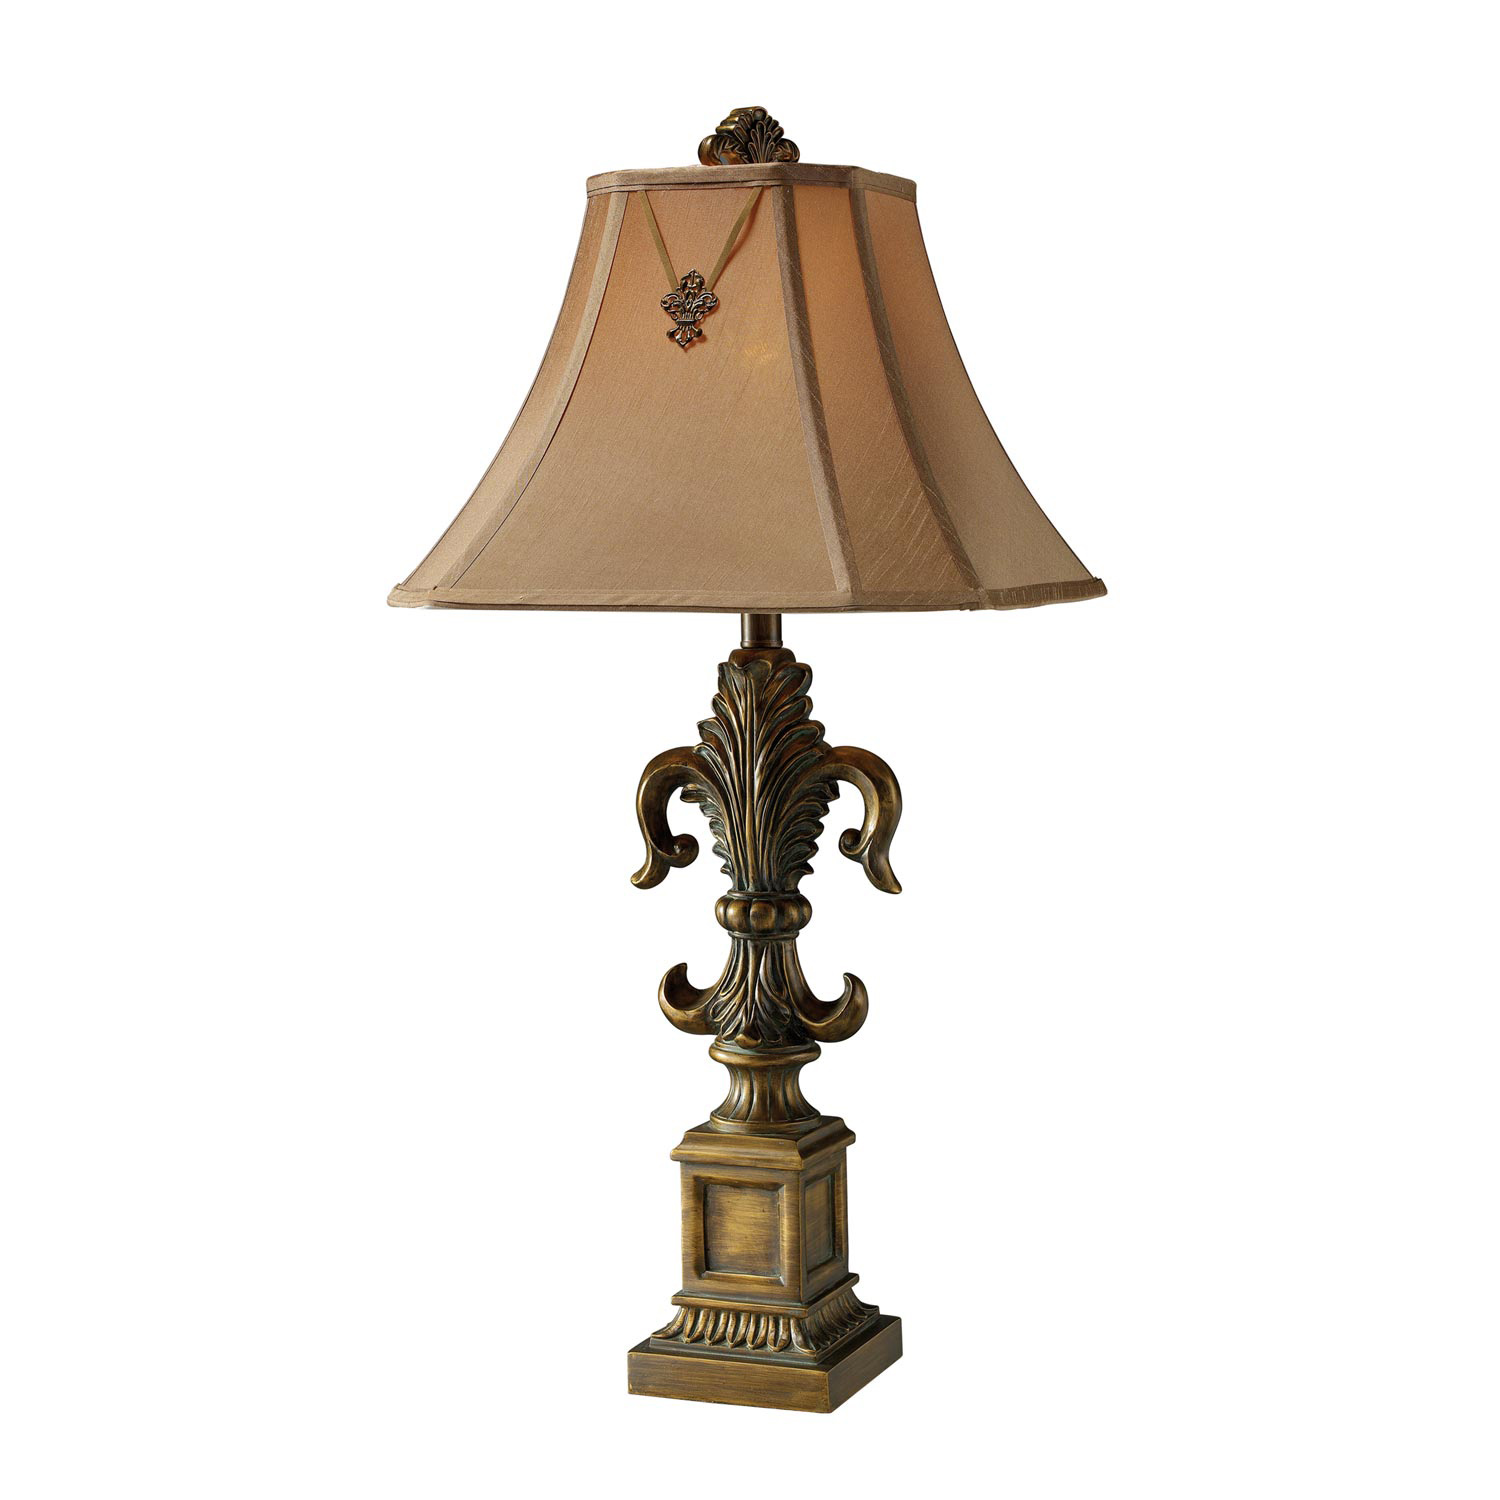 Elk Lighting D1841 Bainbridge Table Lamp - Mccoubrey Bronze